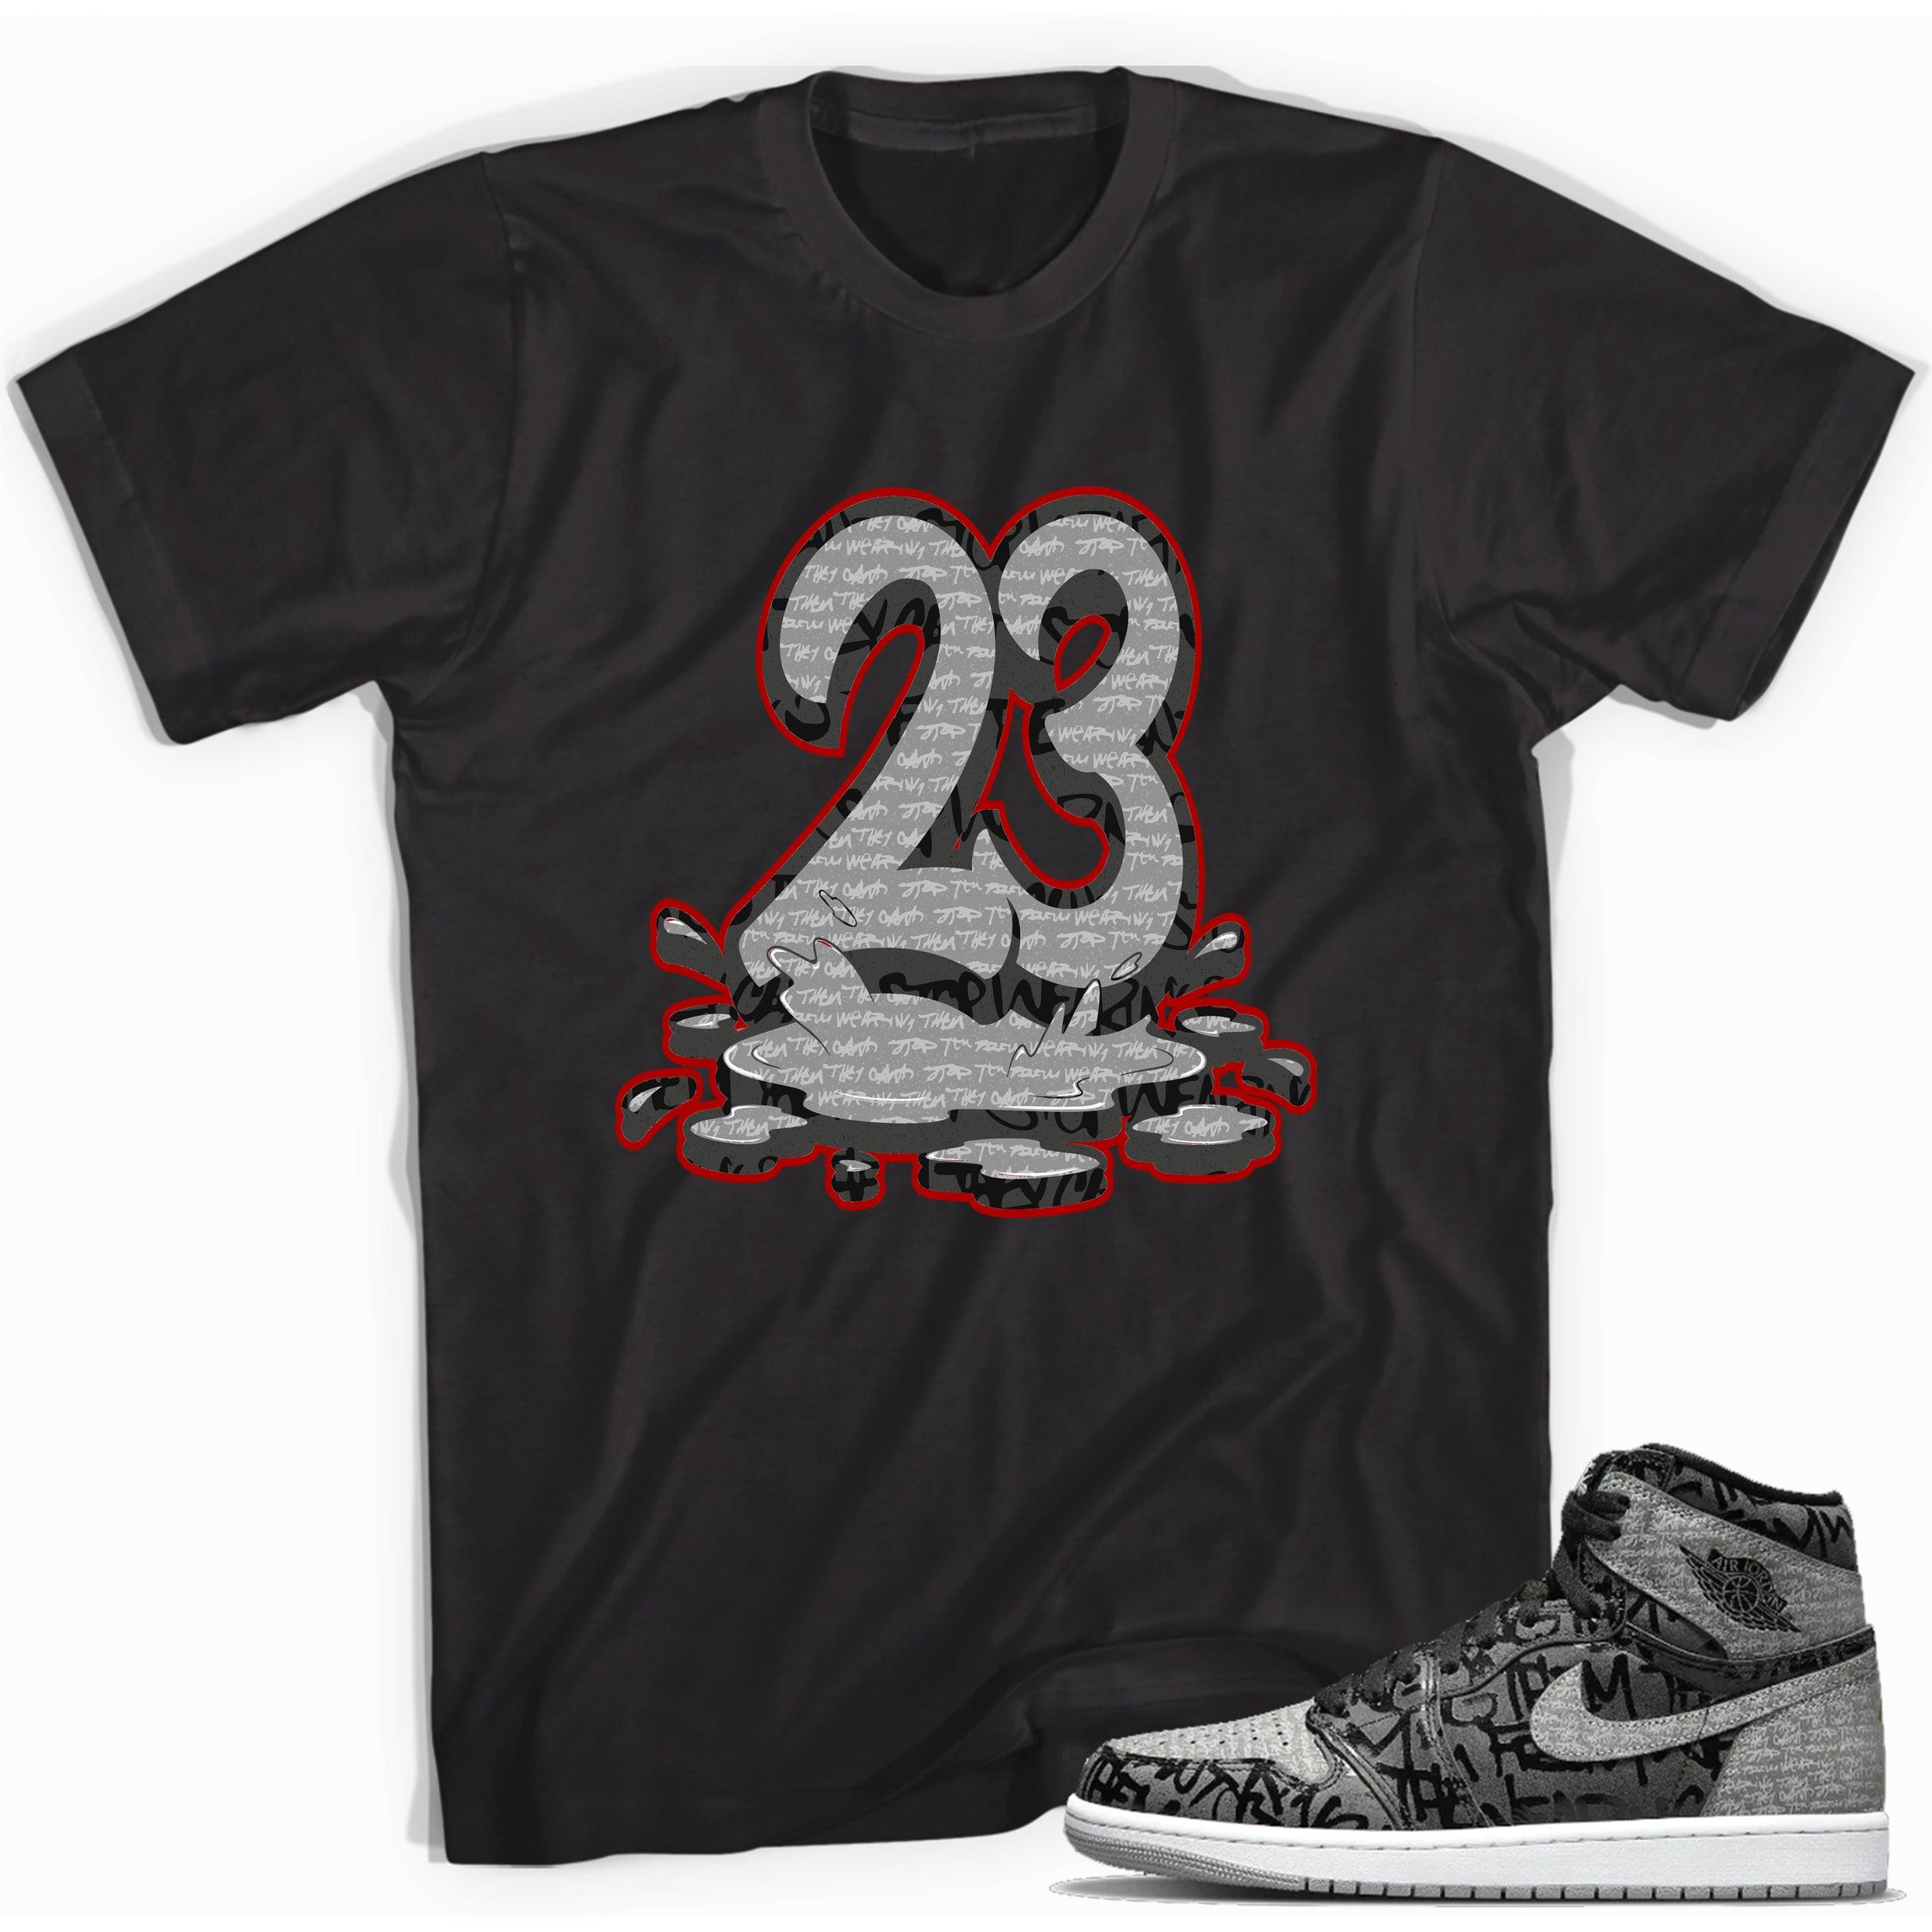 Cool Black 23 Melting Shirt Jordan 1s High OG Rebellionaire photo